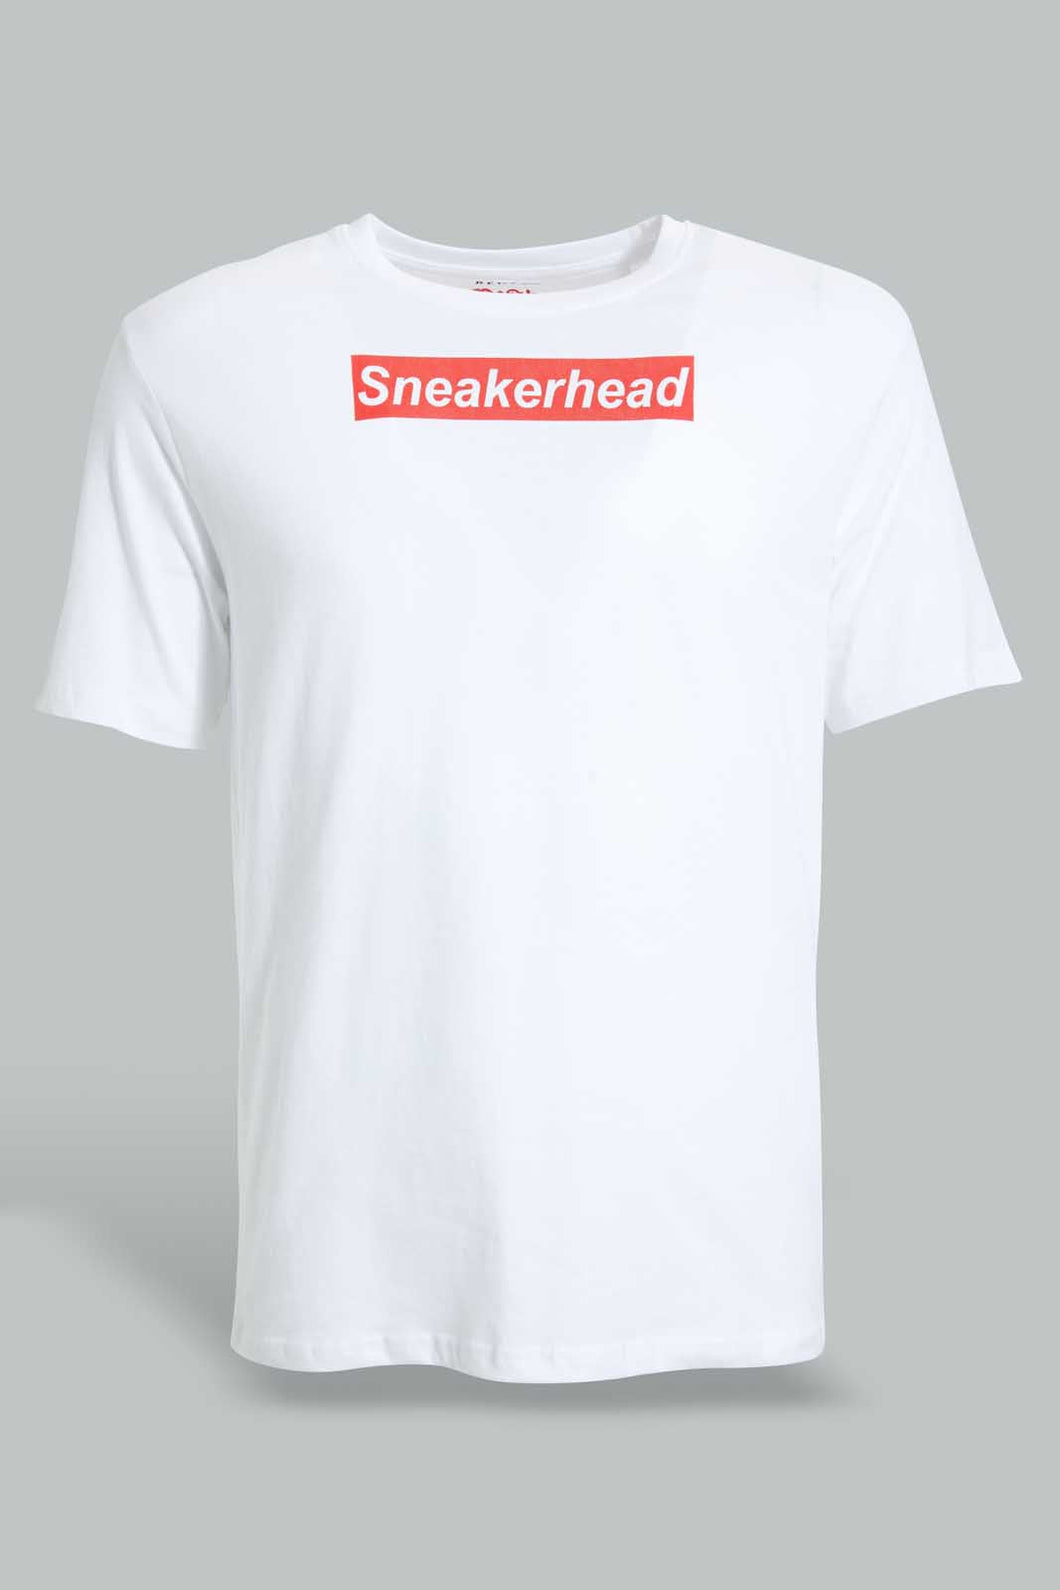 White Sneakerhead T-Shirt For Men تيشيرت مطبوع باللون الأبيض للرجال